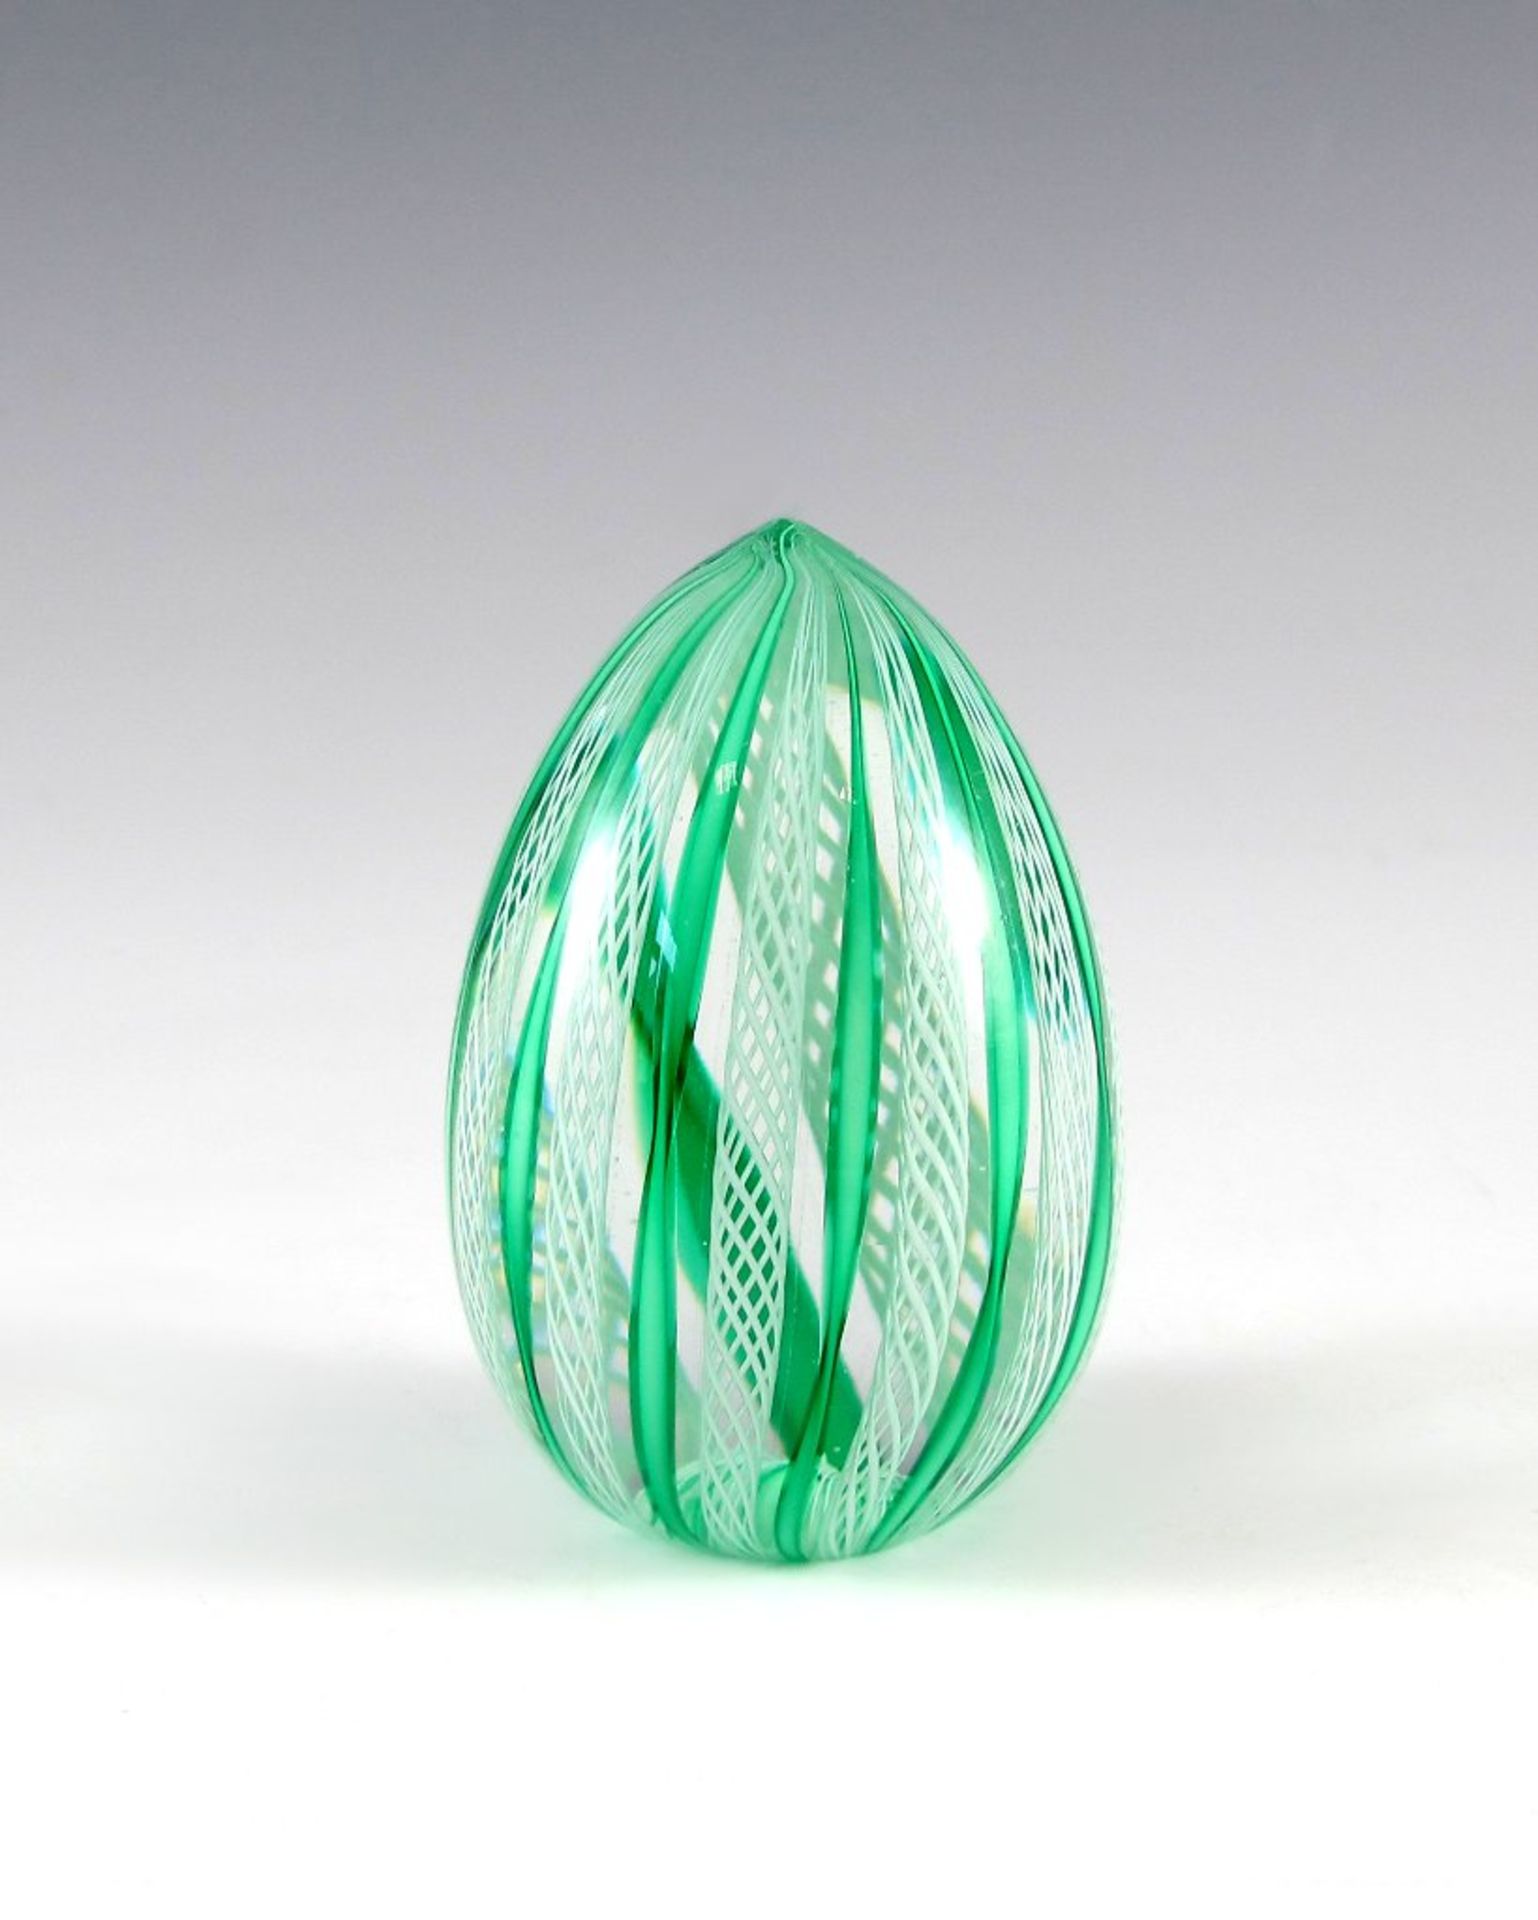 Ei als Paperweight. Farbloses Glas mit Grüneinschmelzung und Latticino. Murano. H 8 cm